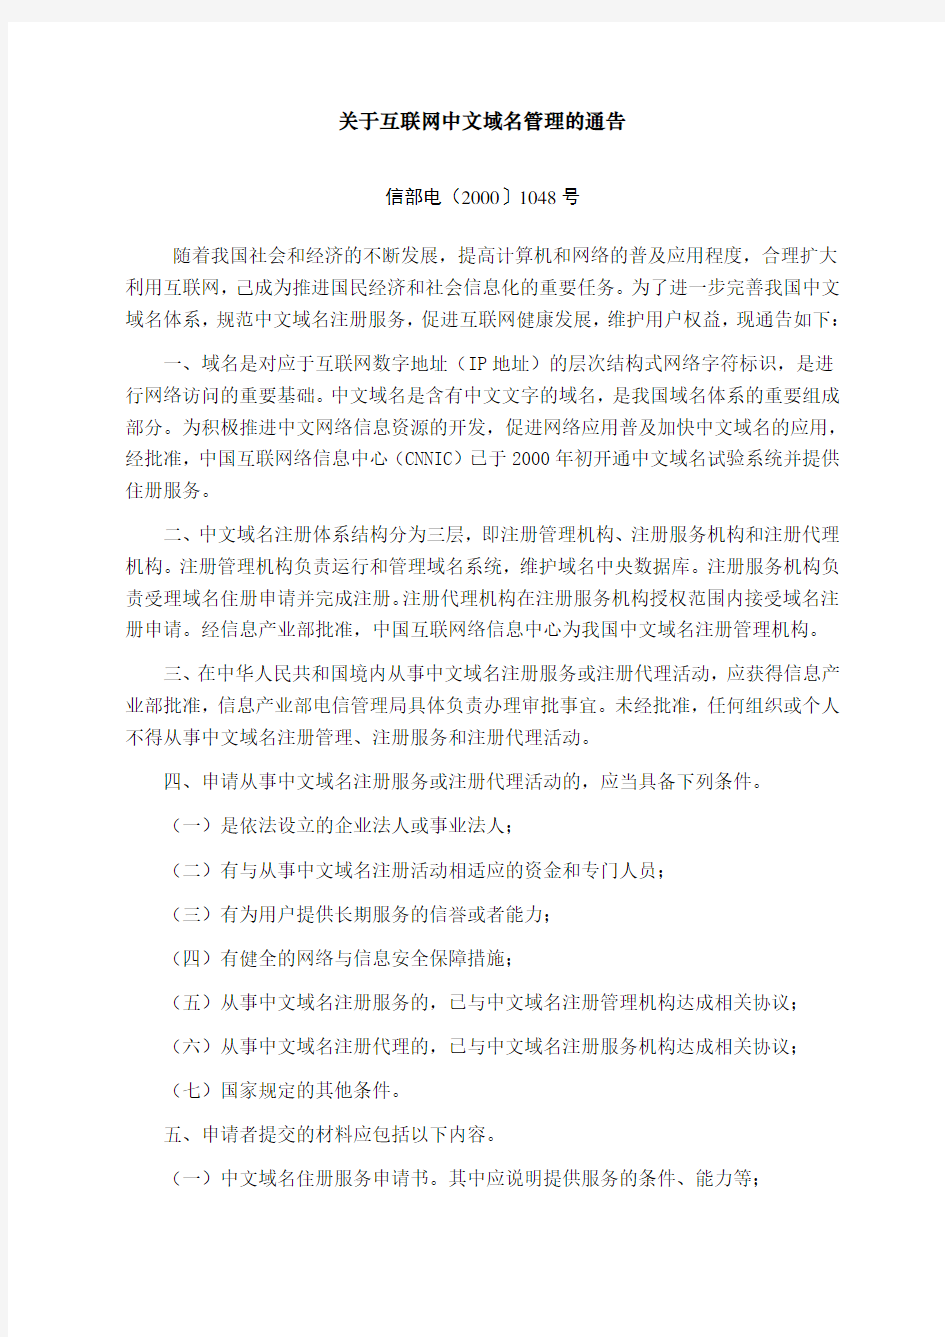 关于互联网中文域名管理的通告